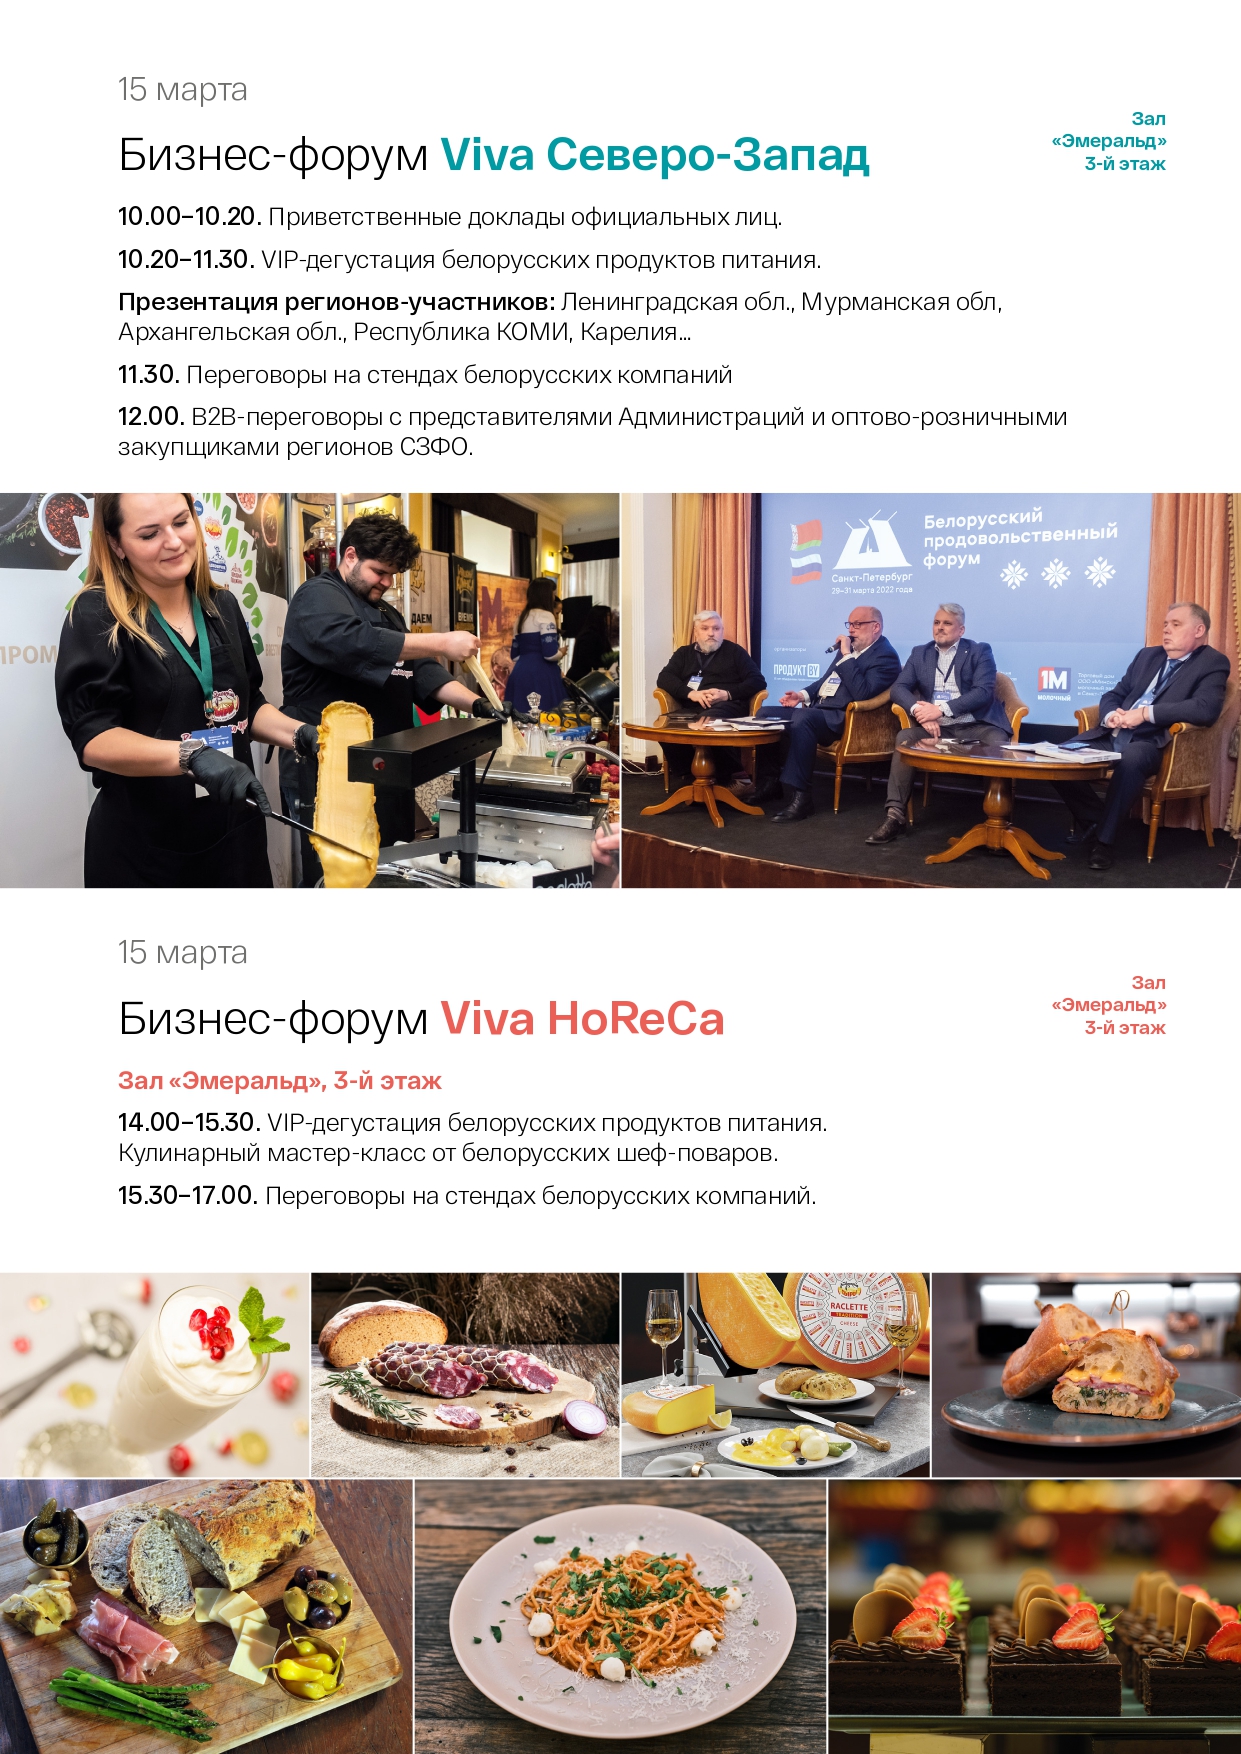 Белорусский продовольственный Форум page 0003